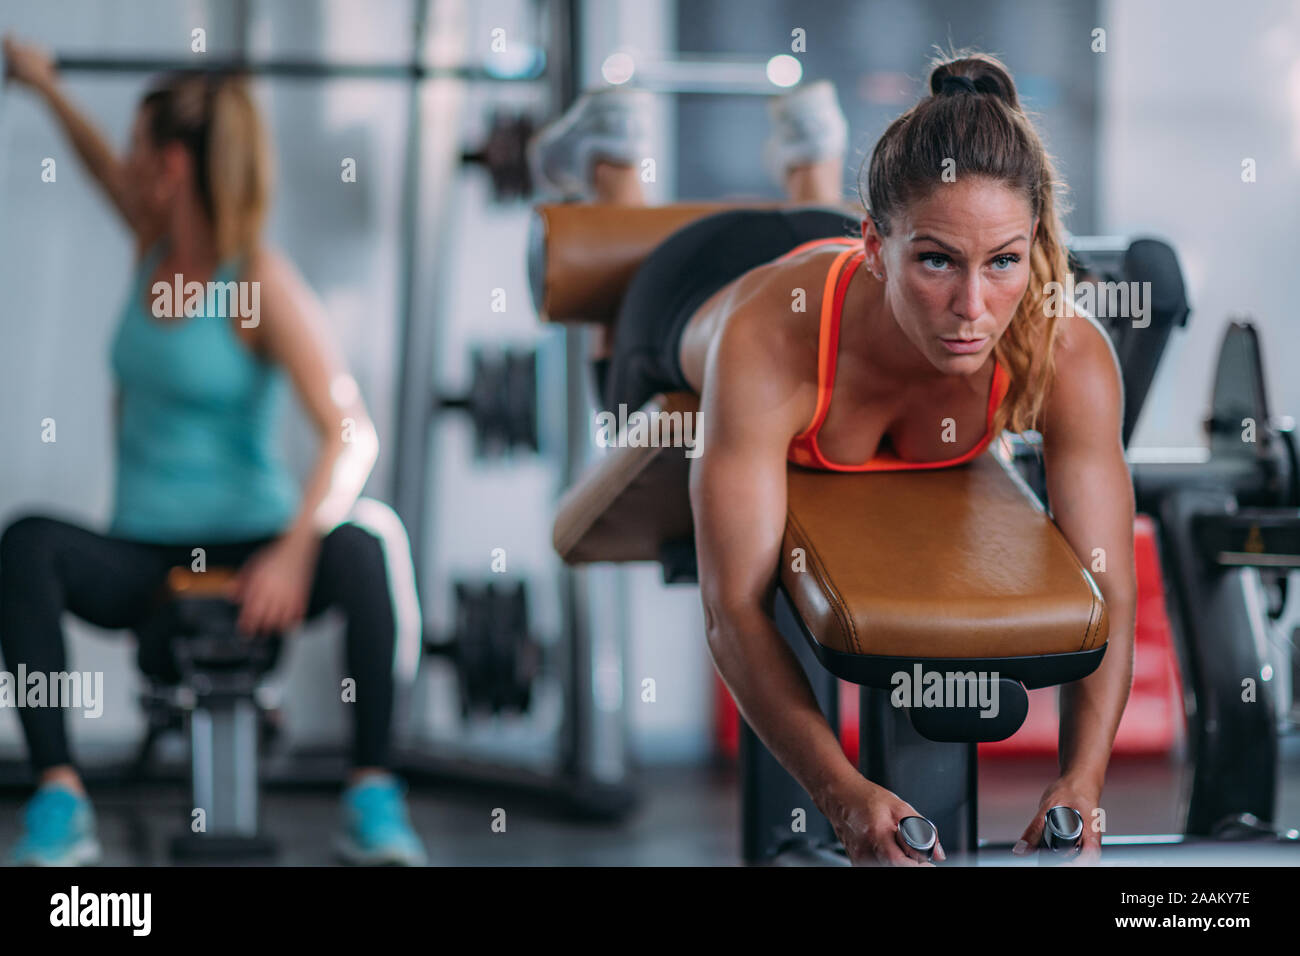 Weibliche Athleten trainieren gestrecktes Bein Sitzbank in der Turnhalle locken. Stockfoto